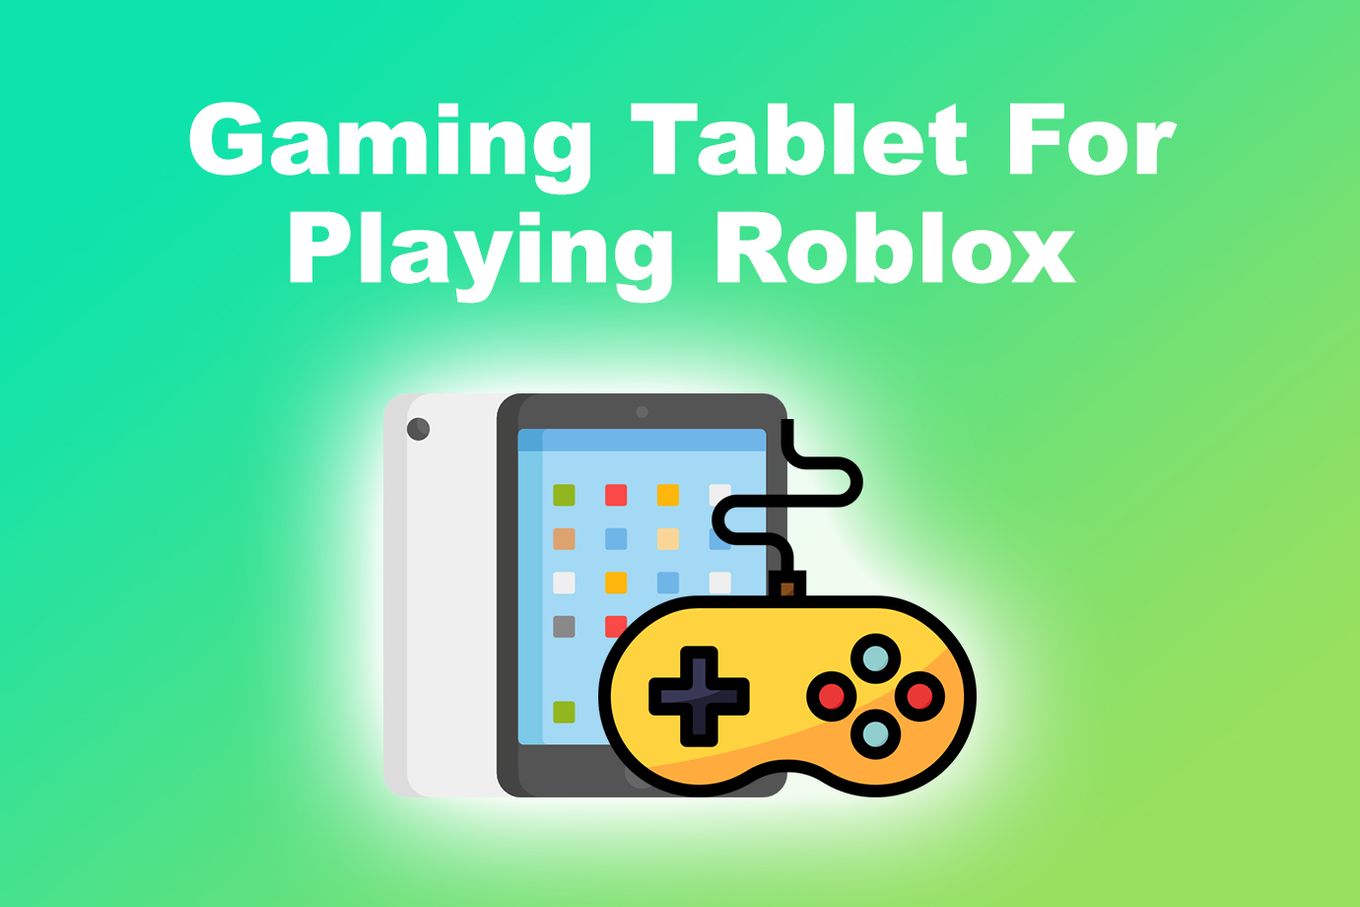 https://alvarotrigo.com/blog/assets/imgs/2023-01-16/gaming-tablet-playing-roblox.jpeg